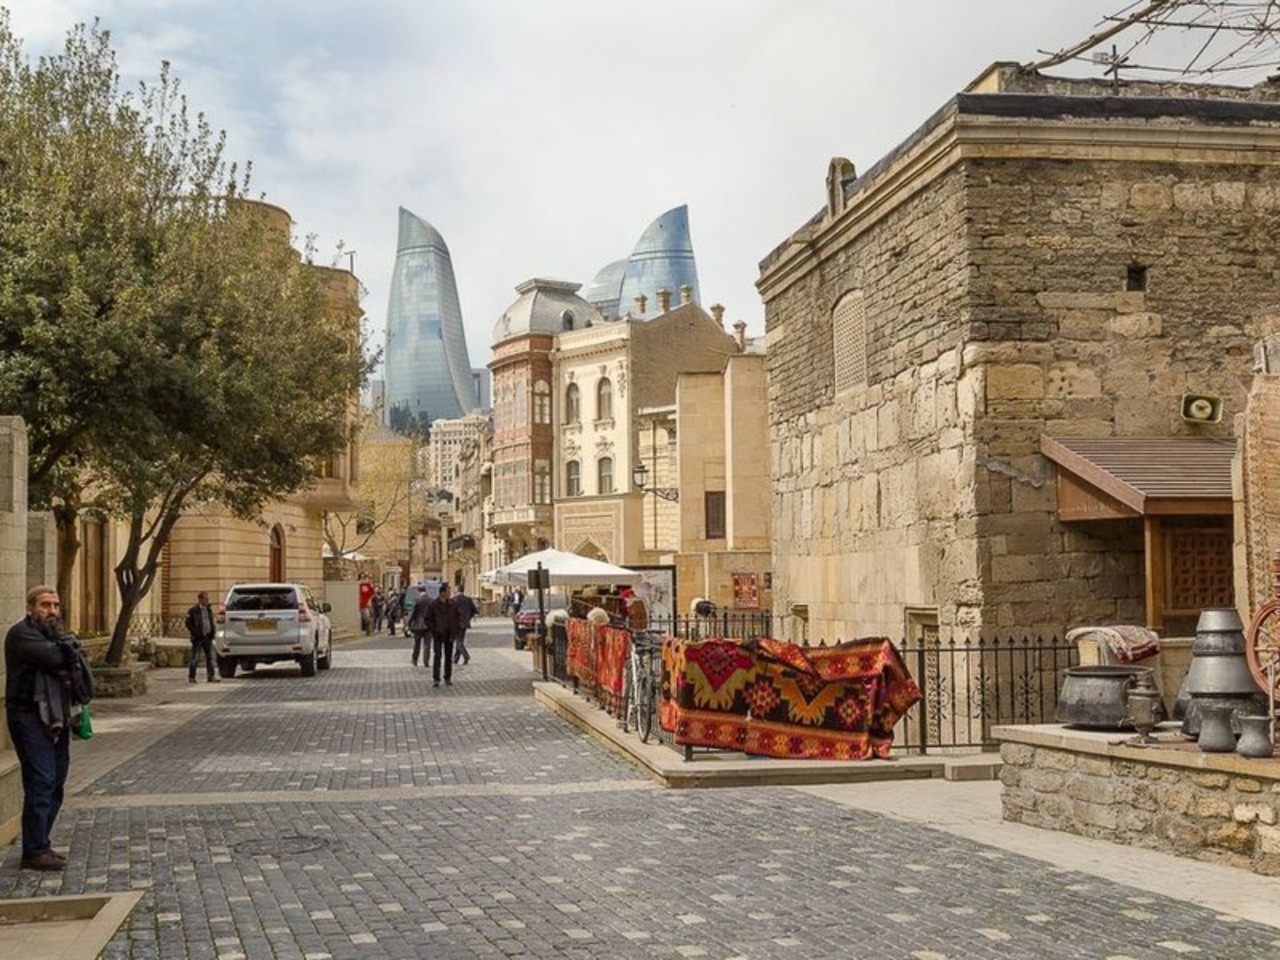 Баку. История Старого города | Цена 95€, отзывы, описание экскурсии